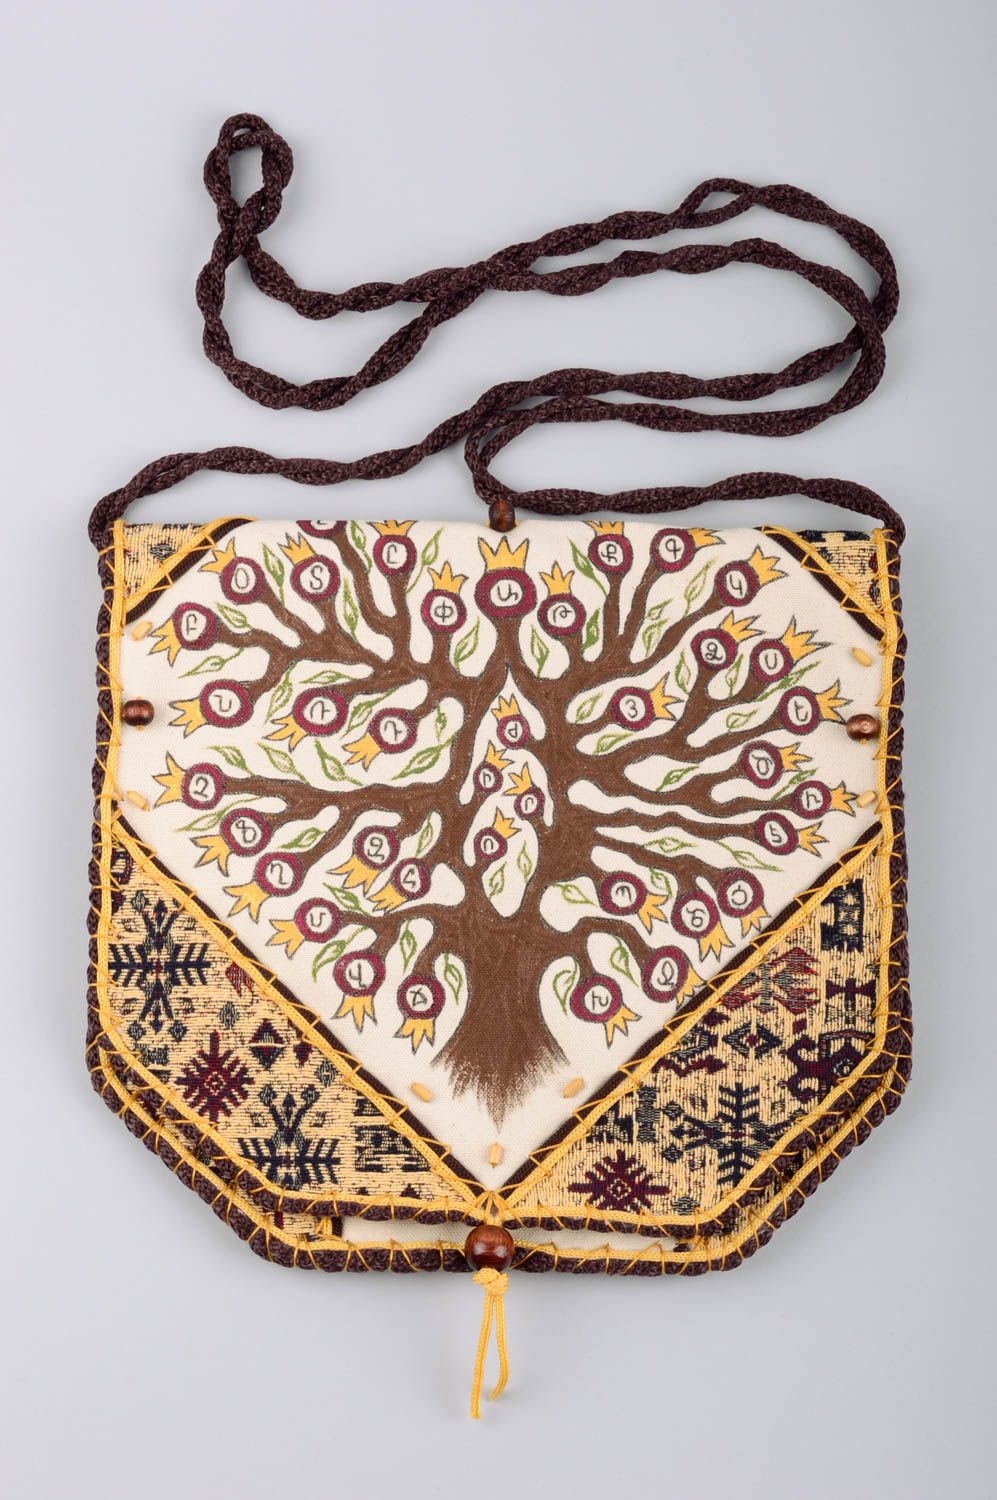 Сумка из ткани ручной работы красивая с деревом расписная стильная необычная фото 1